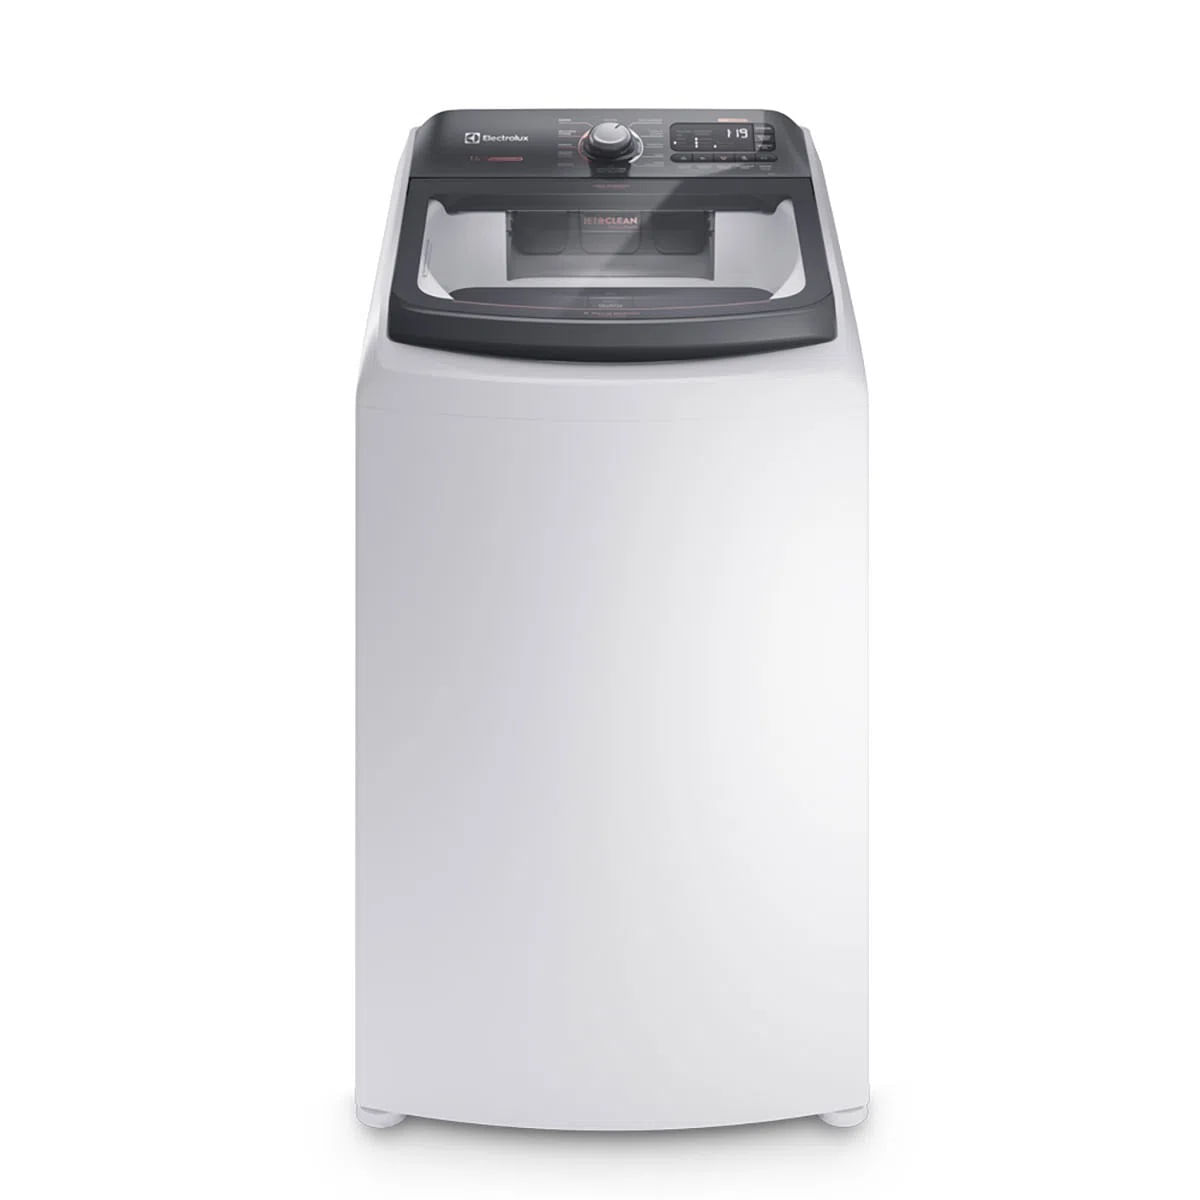 maquina-de-lavar-14kg-electrolux-premium-care-com-cesto-inox-jet-clean-e-time-control-lec14-127v-1.jpg